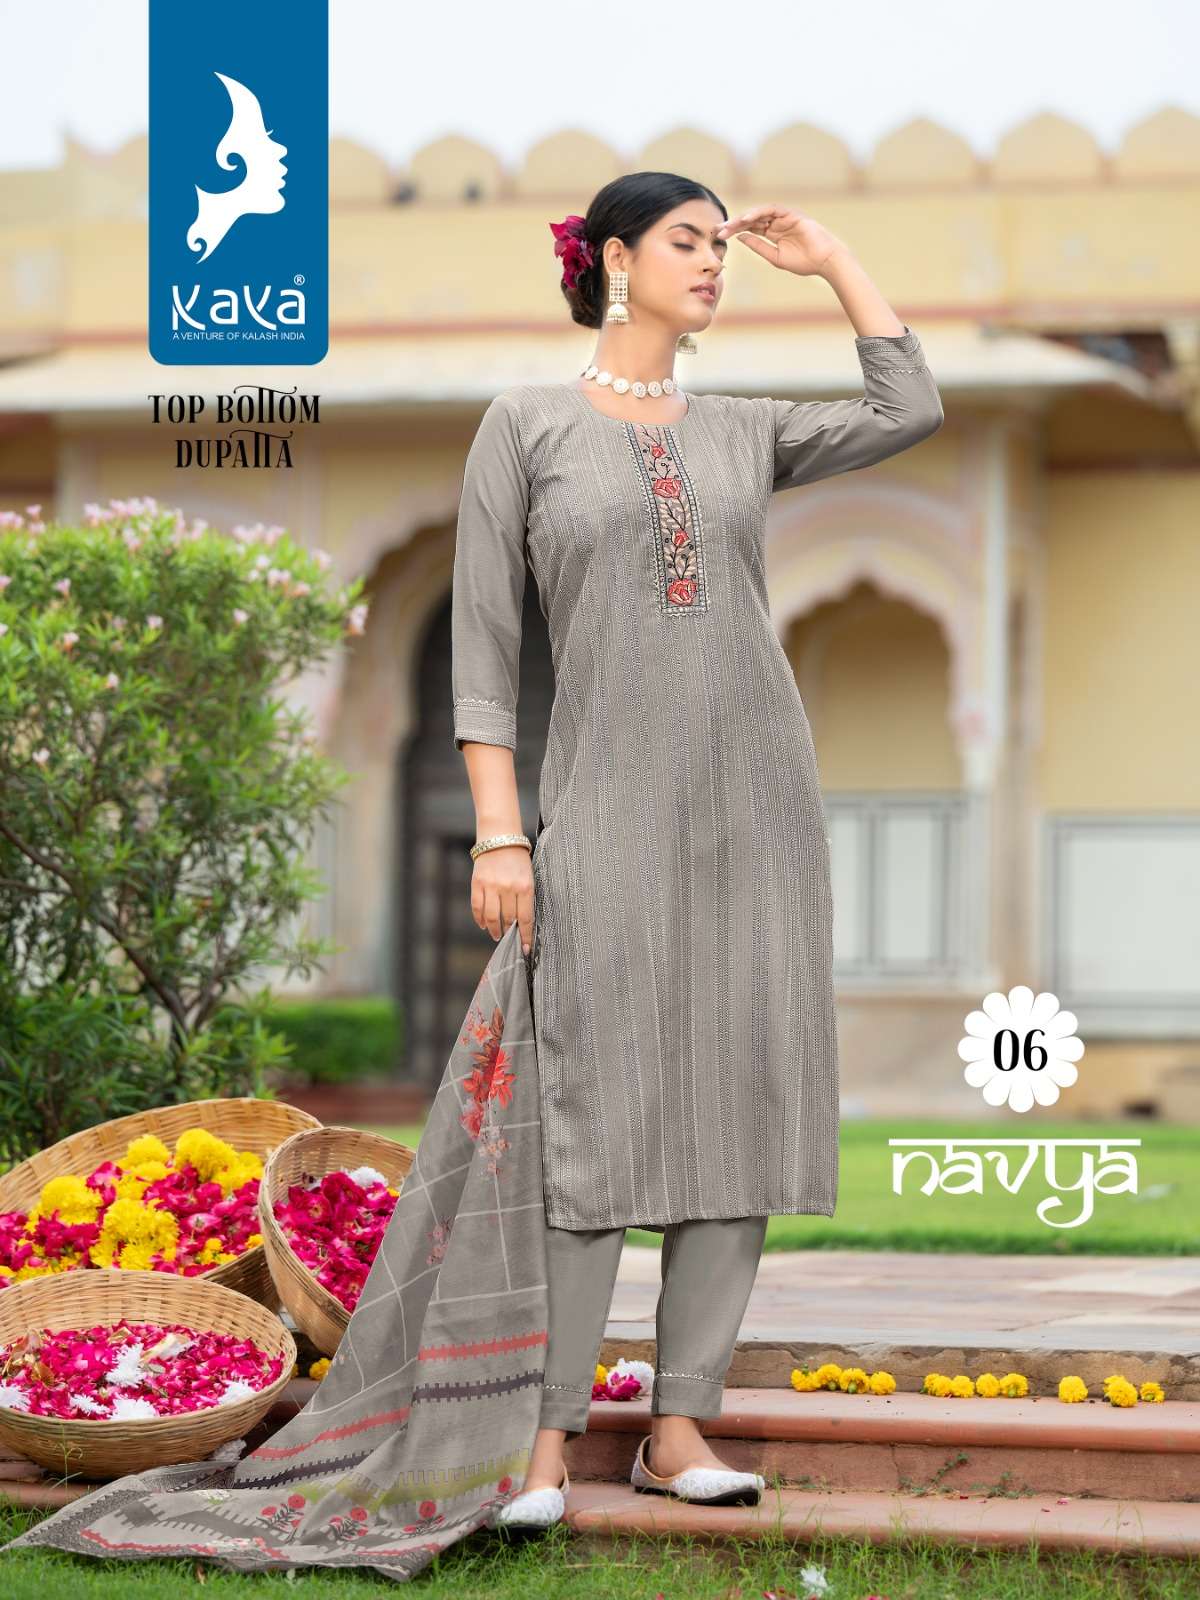 kaya kurti navya 01-06 series designer latest traditional kurti set wholesaler surat gujarat